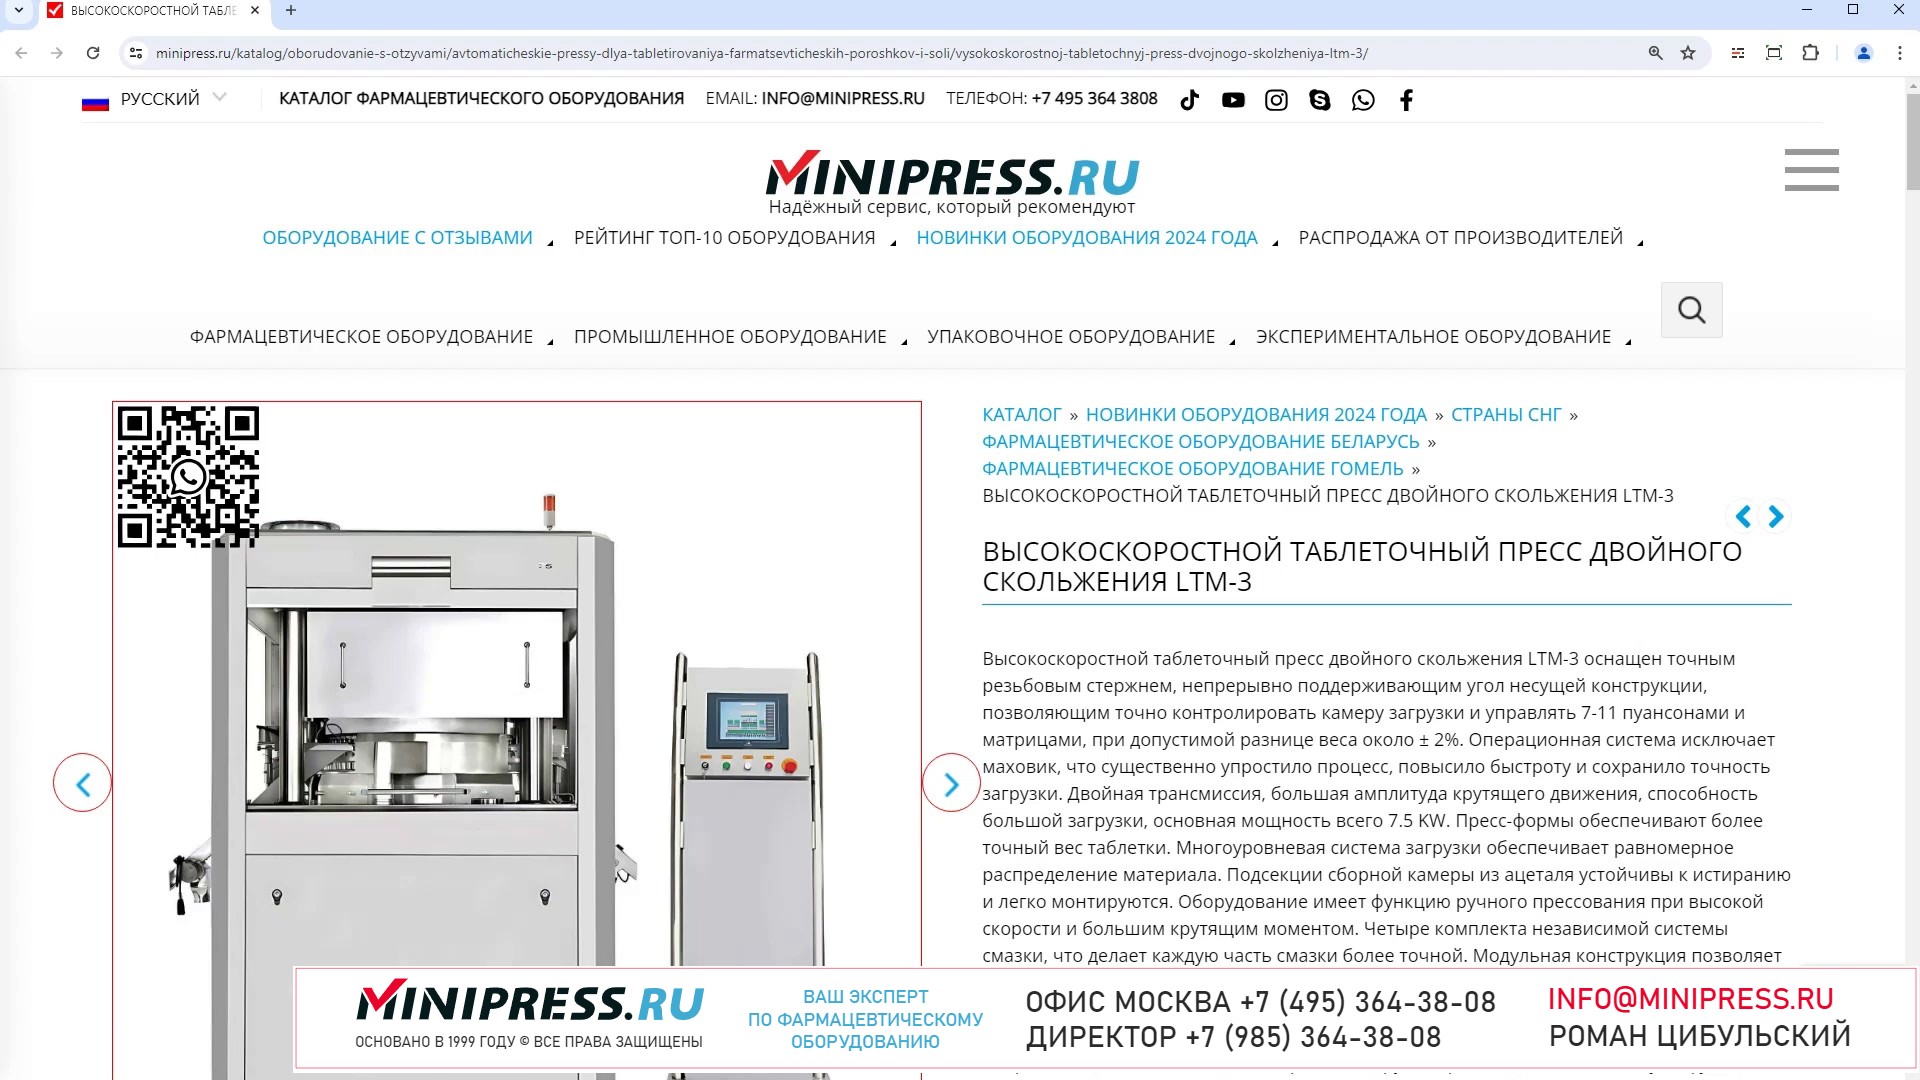 Minipress.ru Высокоскоростной таблеточный пресс двойного скольжения LTM-3